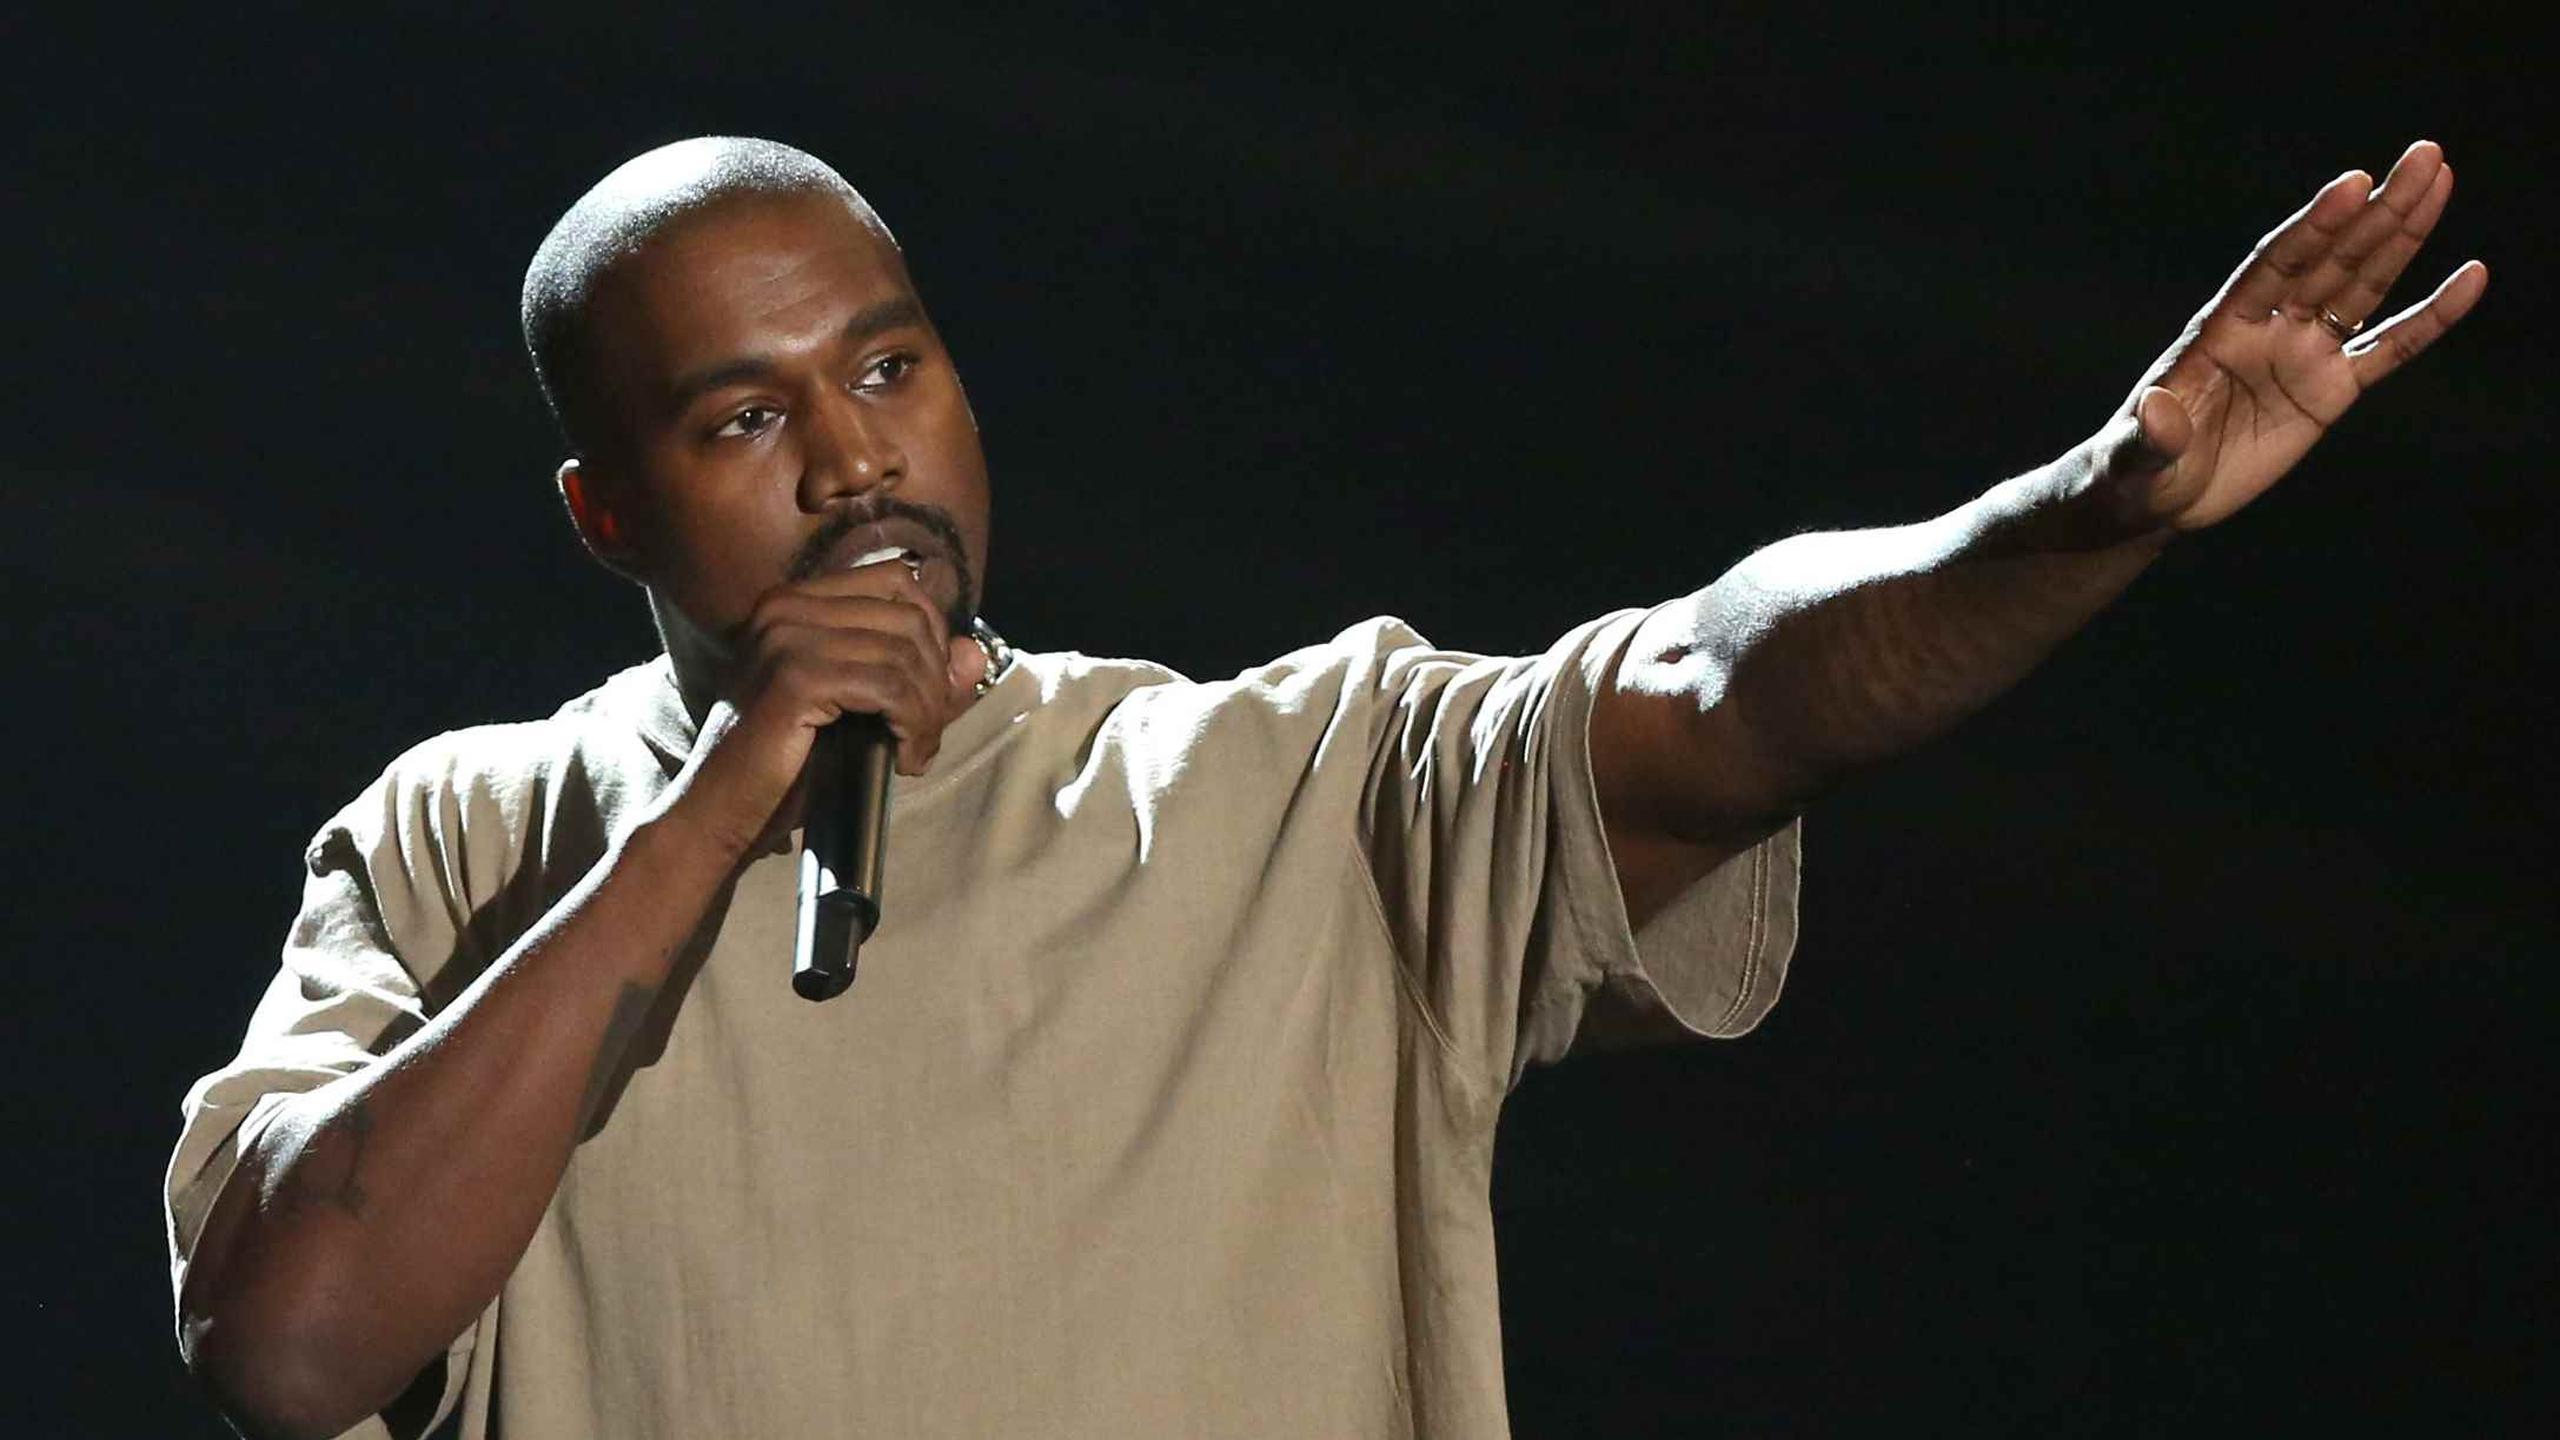 Kanye West acaparó el año pasado toda la atención con un discurso de más de 10 minutos en el que anunció que se presentará a presidente de Estados Unidos en 2020. (Matt Sayles/Invision/AP)
